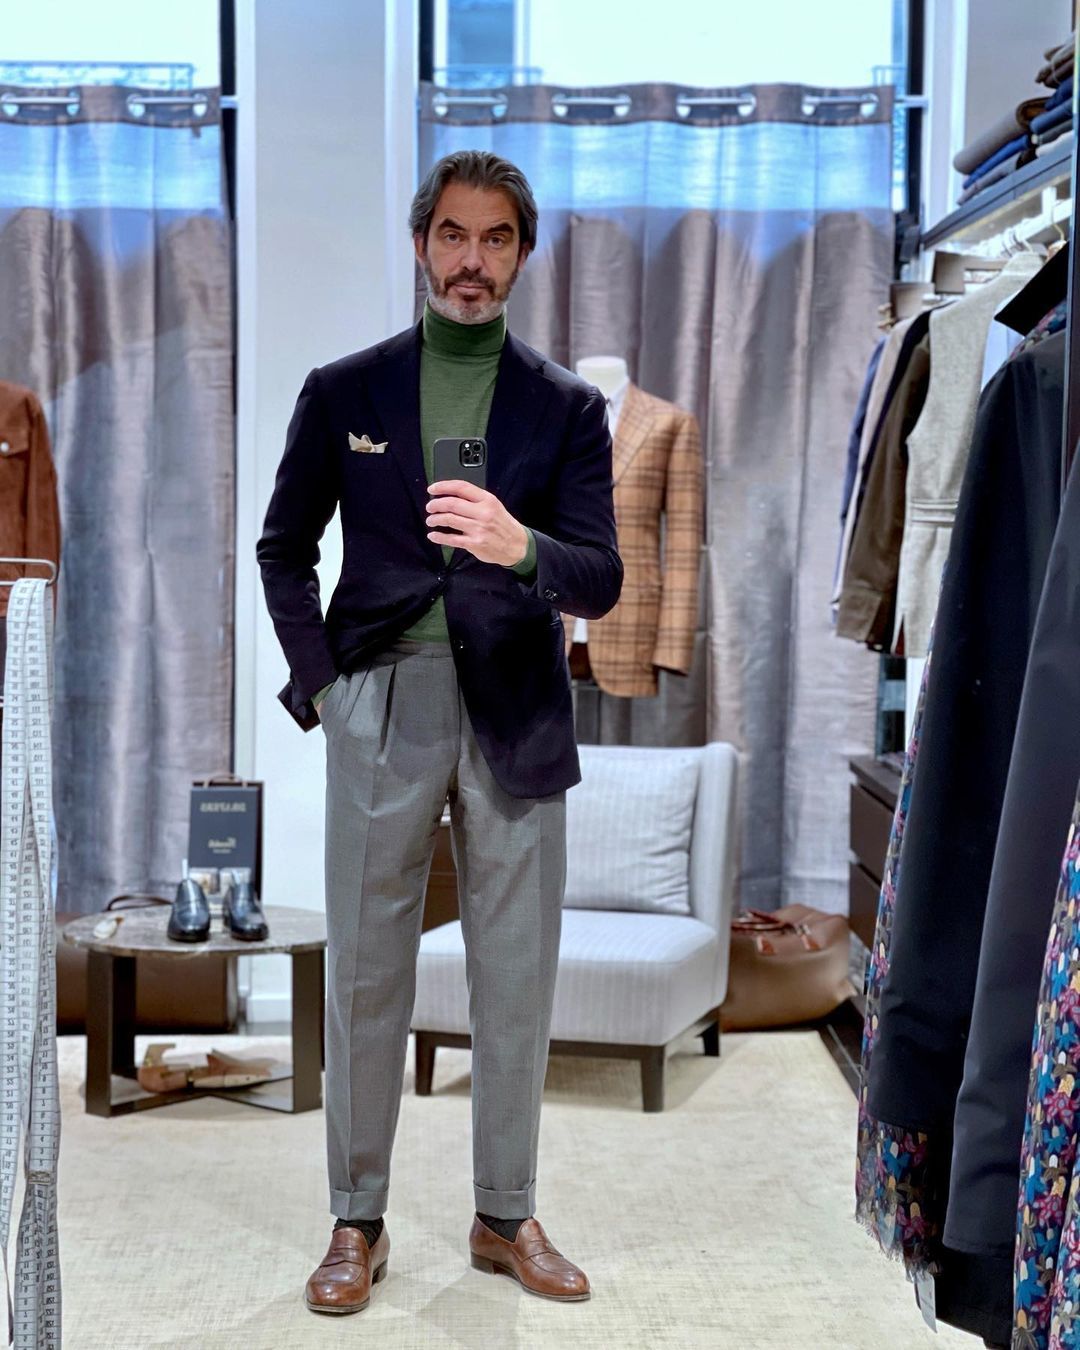 Full Men's Suits | Suit Jackets & Dress Pants | Connor